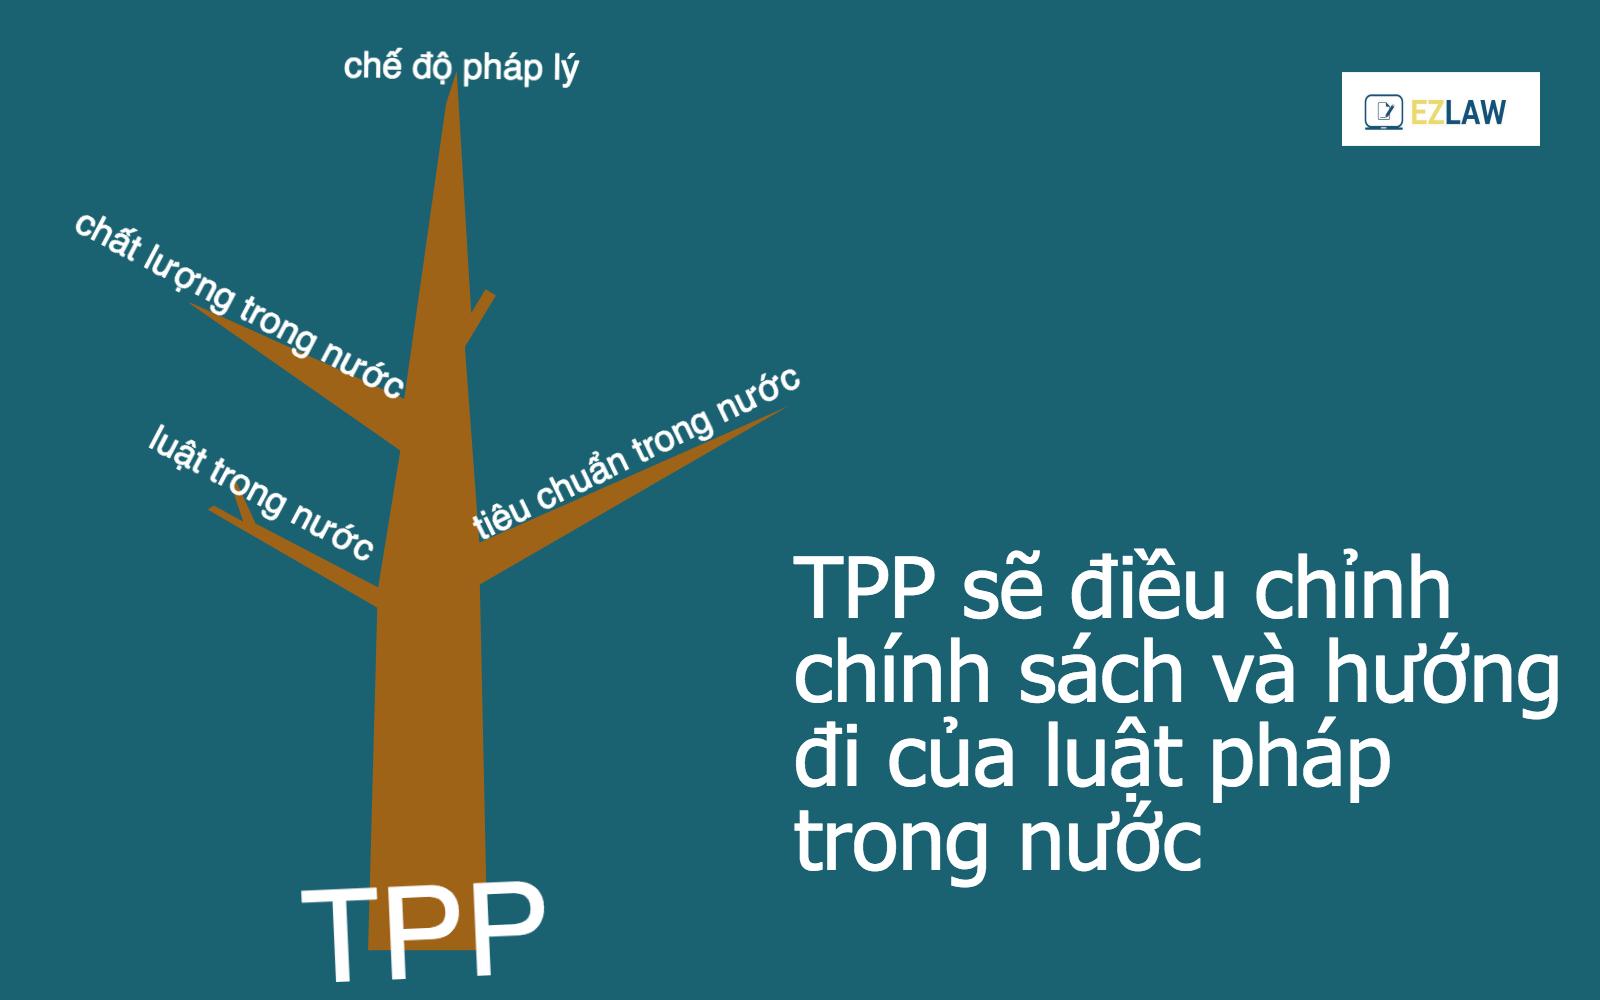 Hầu hết các thỏa thuận quốc tế là về xuất nhập khẩu hàng hóa, dịch vụ, nhưng TPP thì khác. Chính bản thân TPP sẽ tạo ra các điều luật quốc tế có khả năng điểu chỉnh chính sách và hướng đi của luật pháp trong từng quốc gia thành viên. Nói một cách khác, các điều luật của các quốc gia thành viên sẽ phải tuân theo định hướng của TPP.